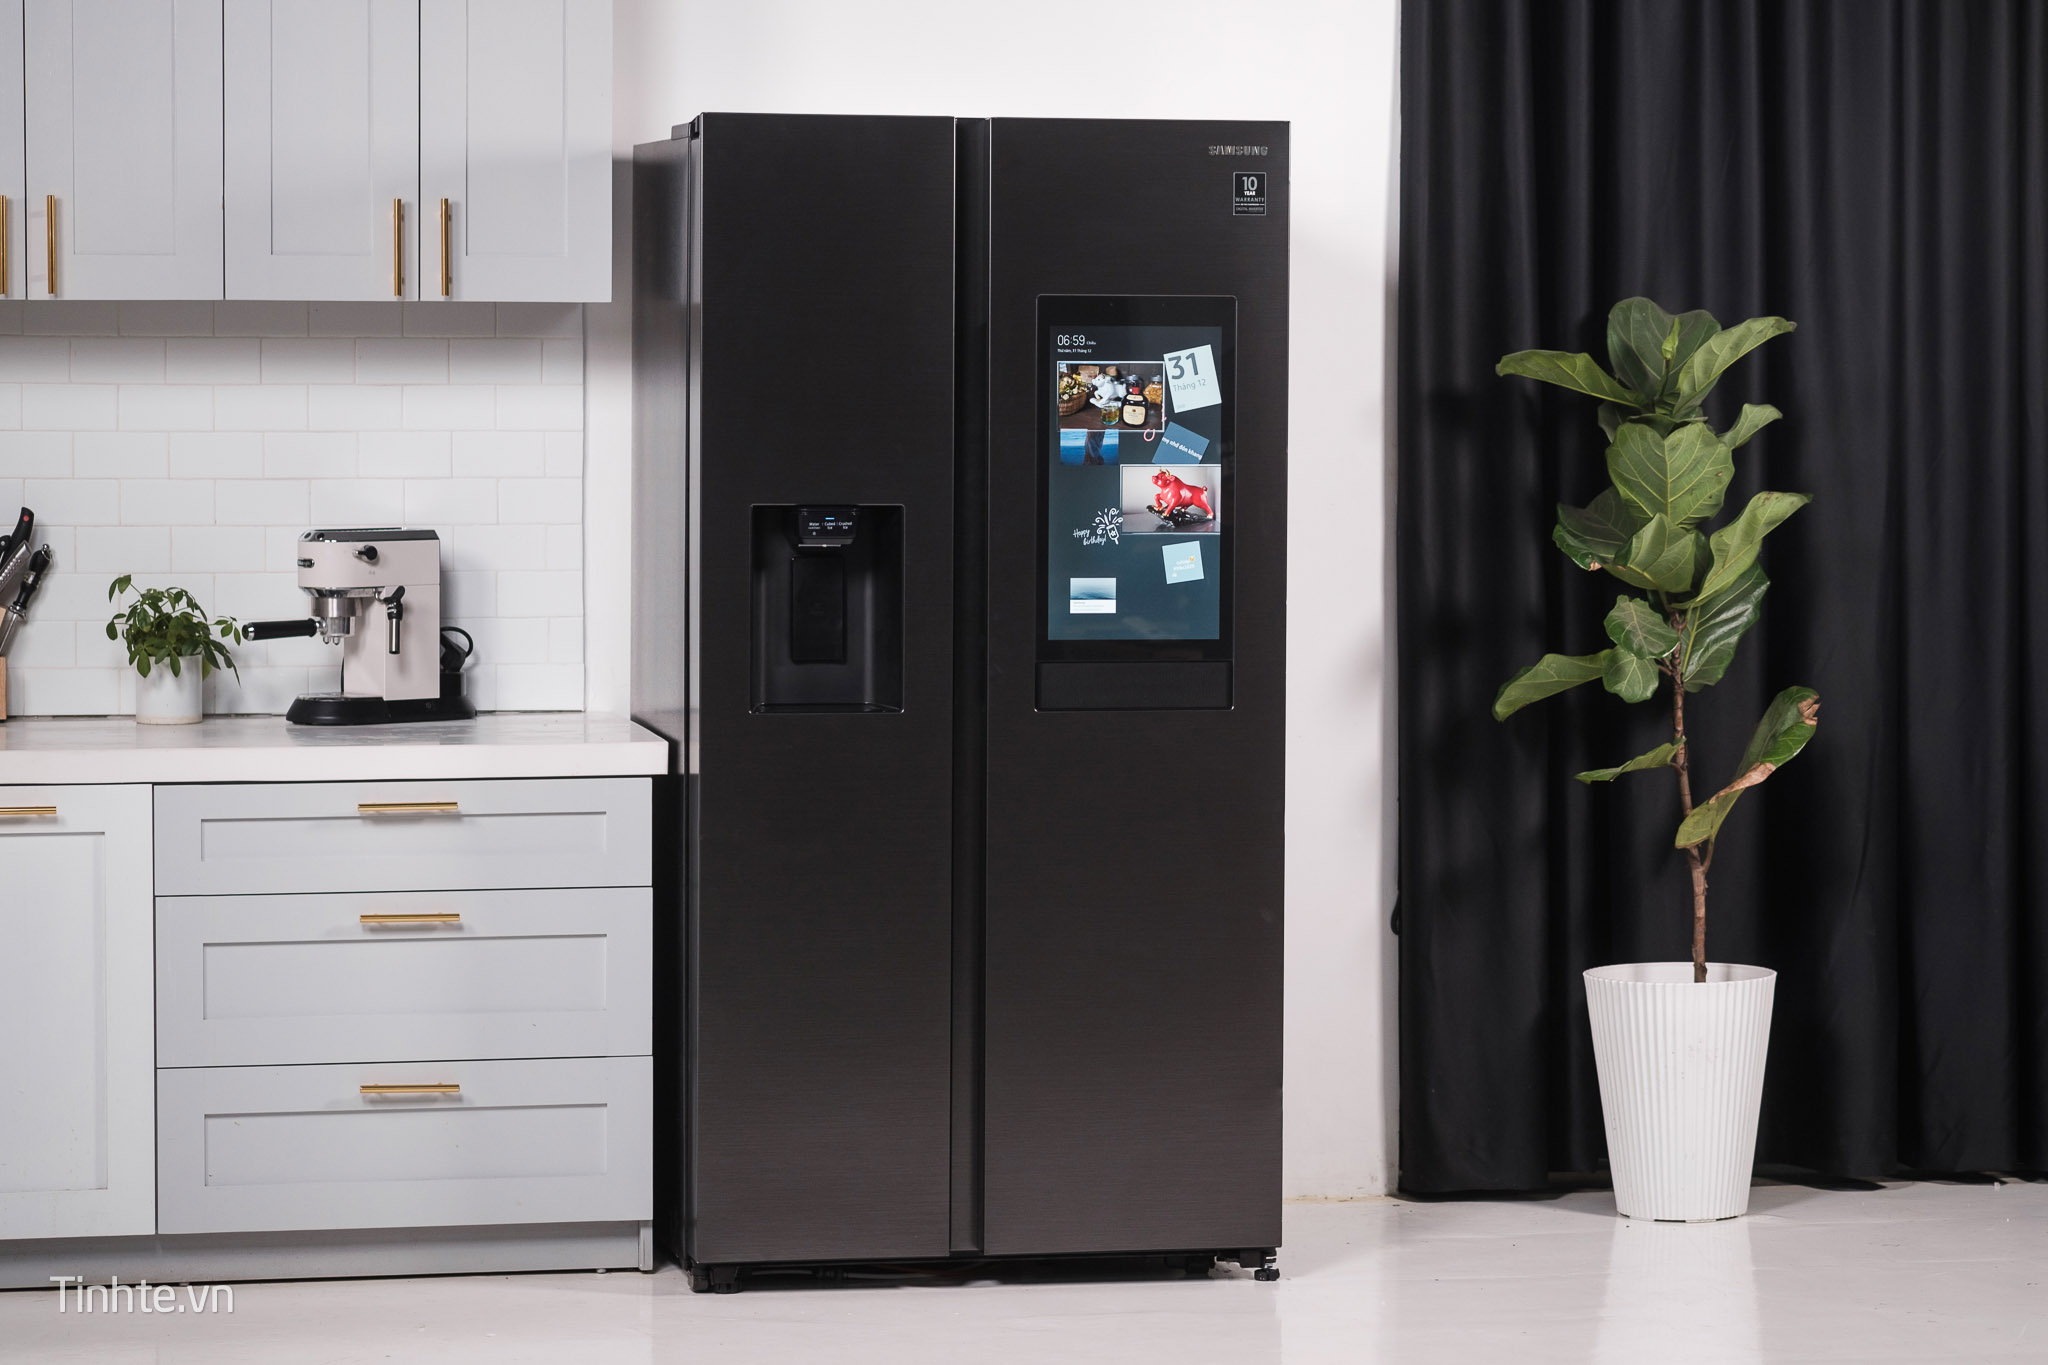 Trên tay tủ lạnh thông minh Samsung Family HUB